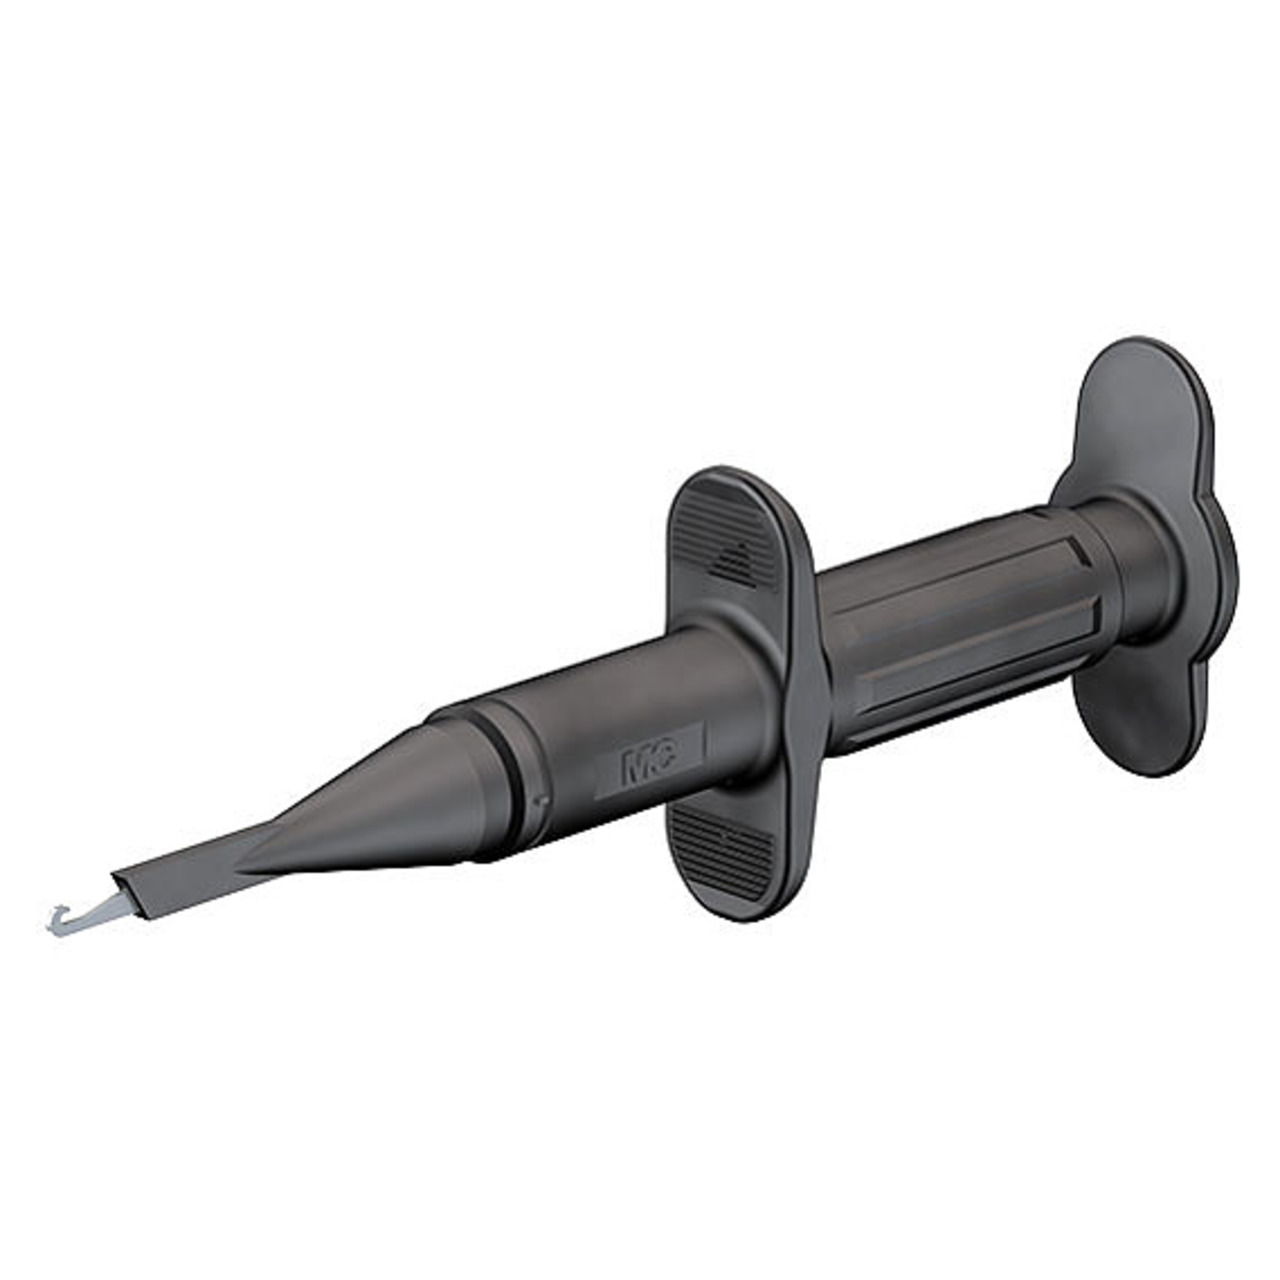 Sicherheits-Hakenabgreifer GRIP-A- schwarz- 4 mm unter Messtechnik